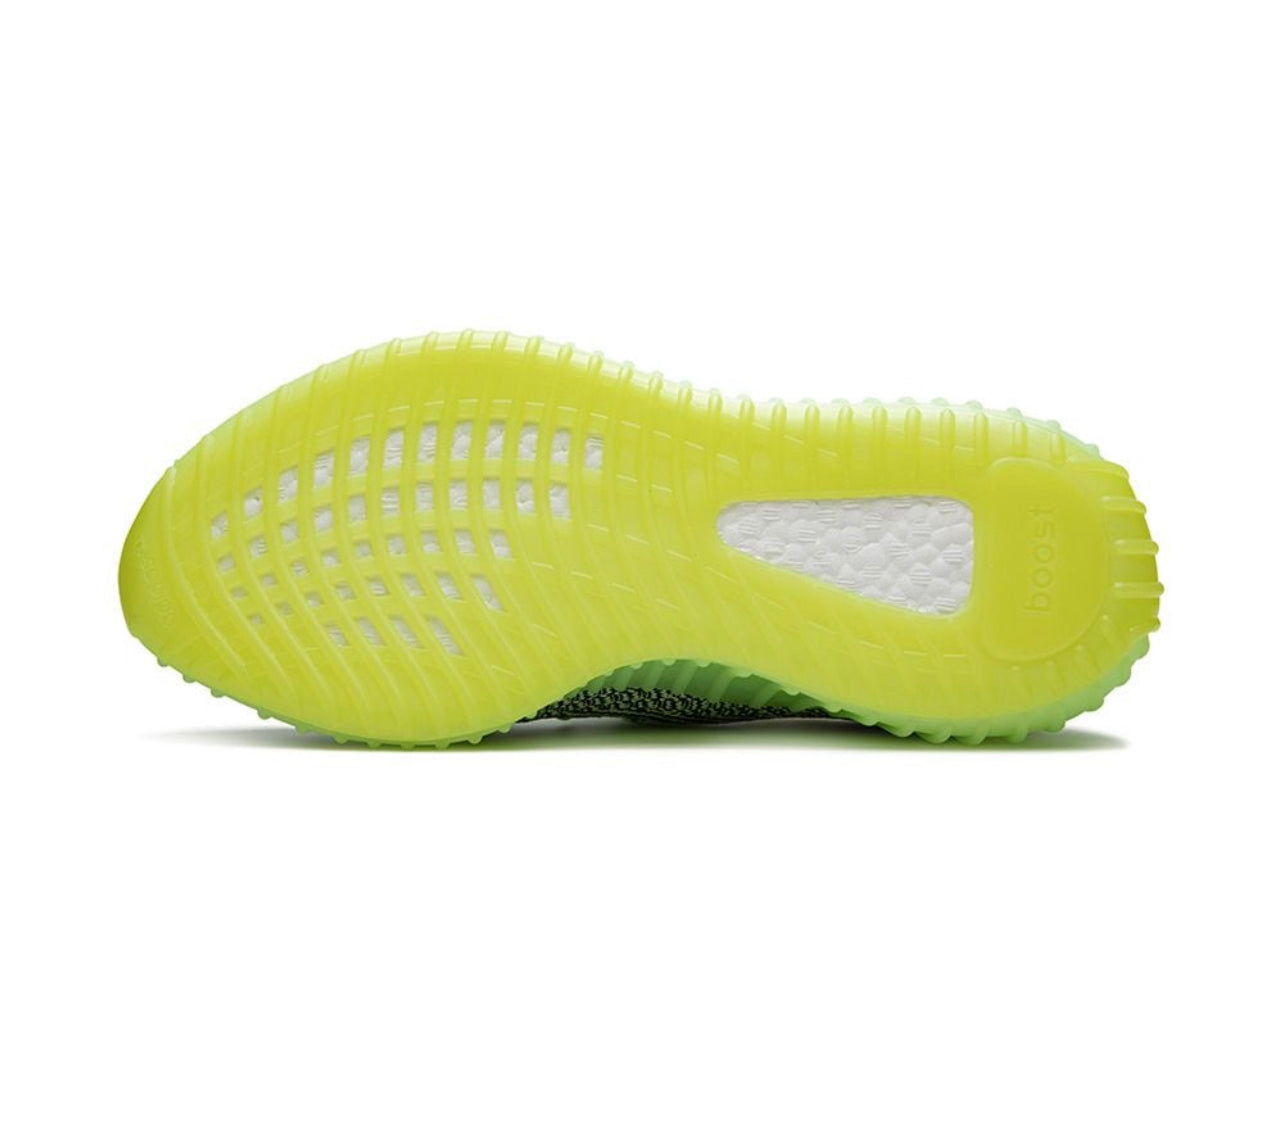 Adidas Yeezy Yeezy Boost 350 V2 "Yeezreel"